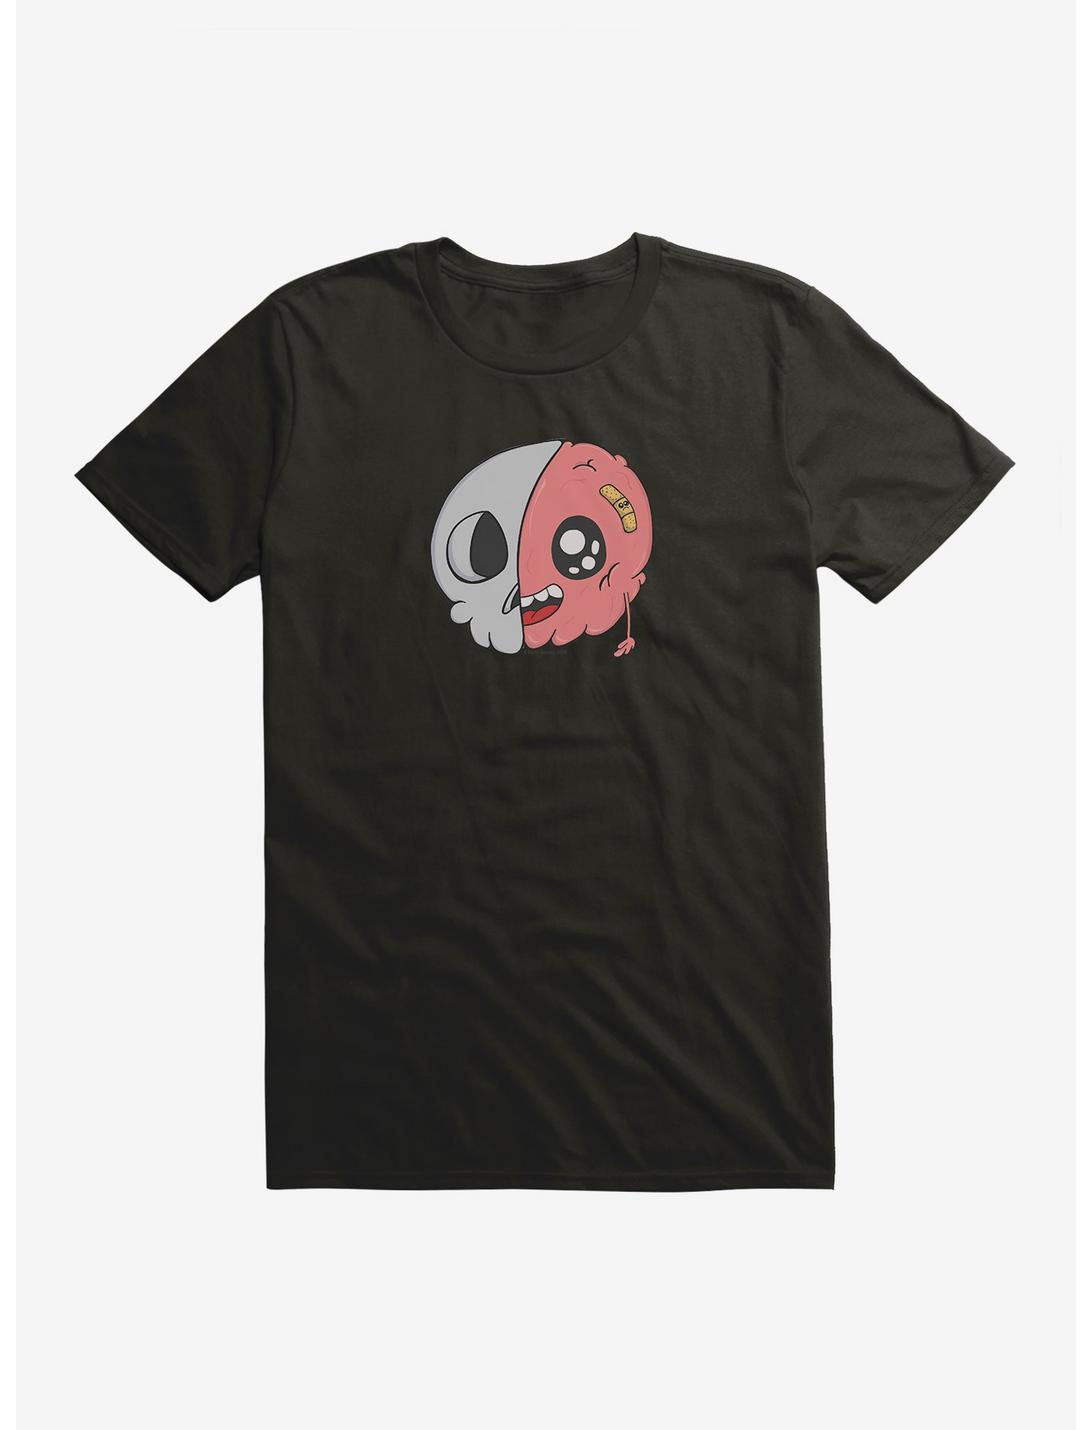 Depressed Monsters Half Brain T-Shirt By Ryan Brunty, , hi-res